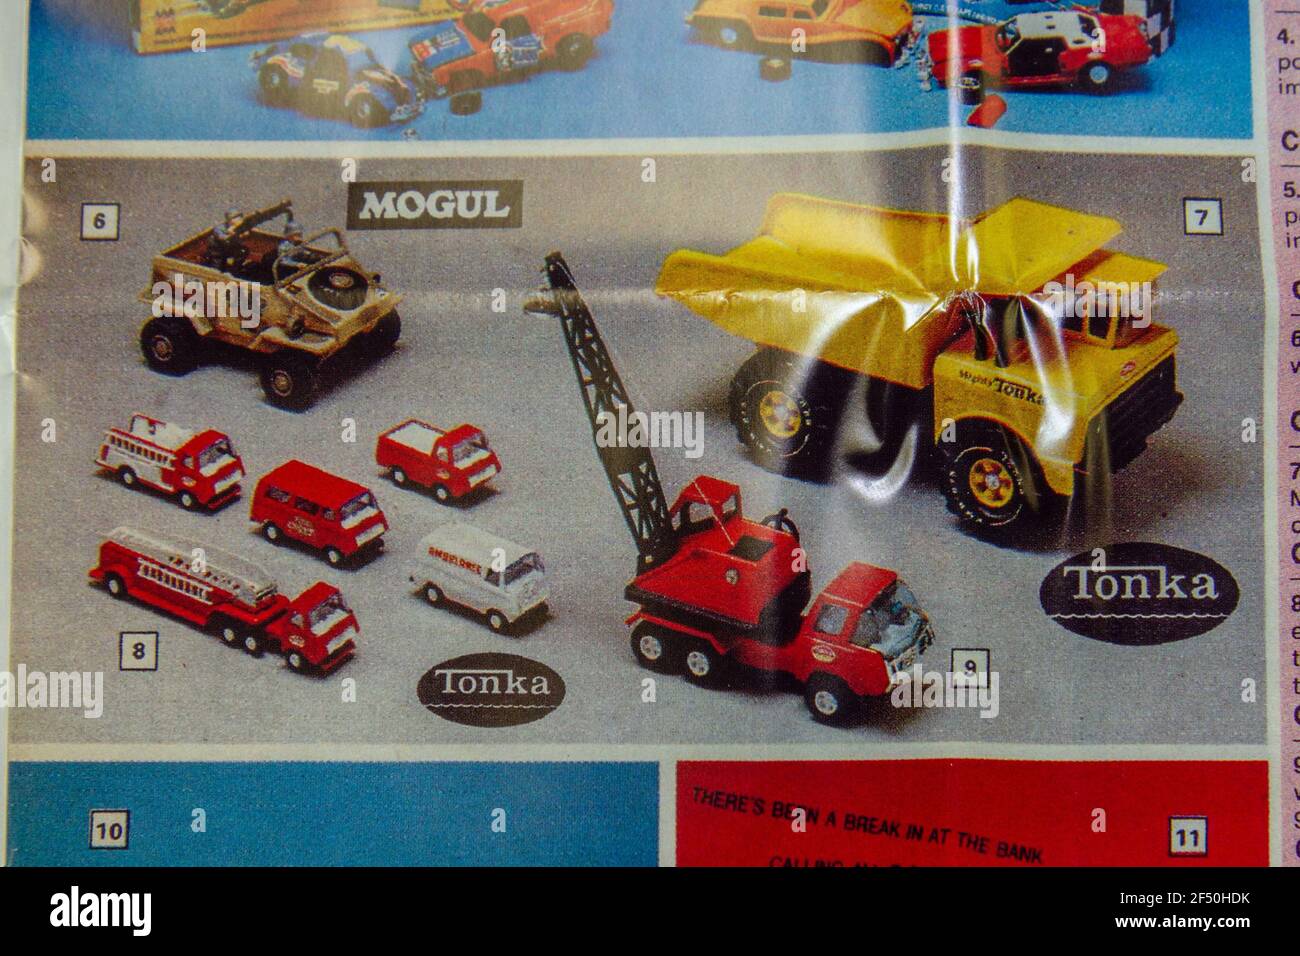 Eine Nachbildung von Argos Spielzeug Katalogseite mit Tonka und Mogul Spielzeugfahrzeugen, Teil einer Schule 1970er Kindheit Erinnerungsstücke Pack. Stockfoto